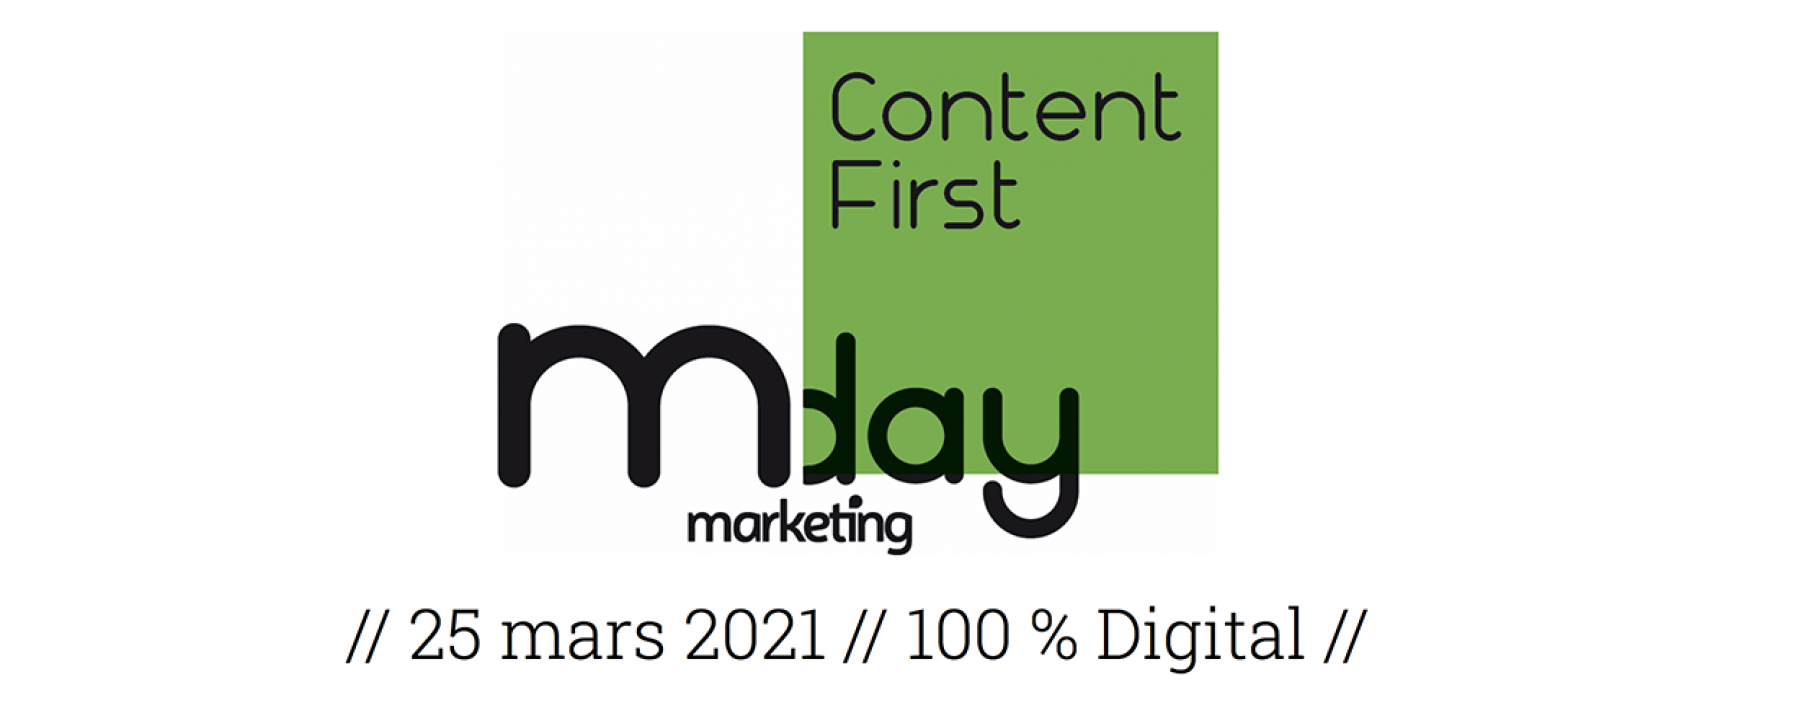 Marketing Day Content First, un événement organisé par NetMedia Group le 25 mars 2021